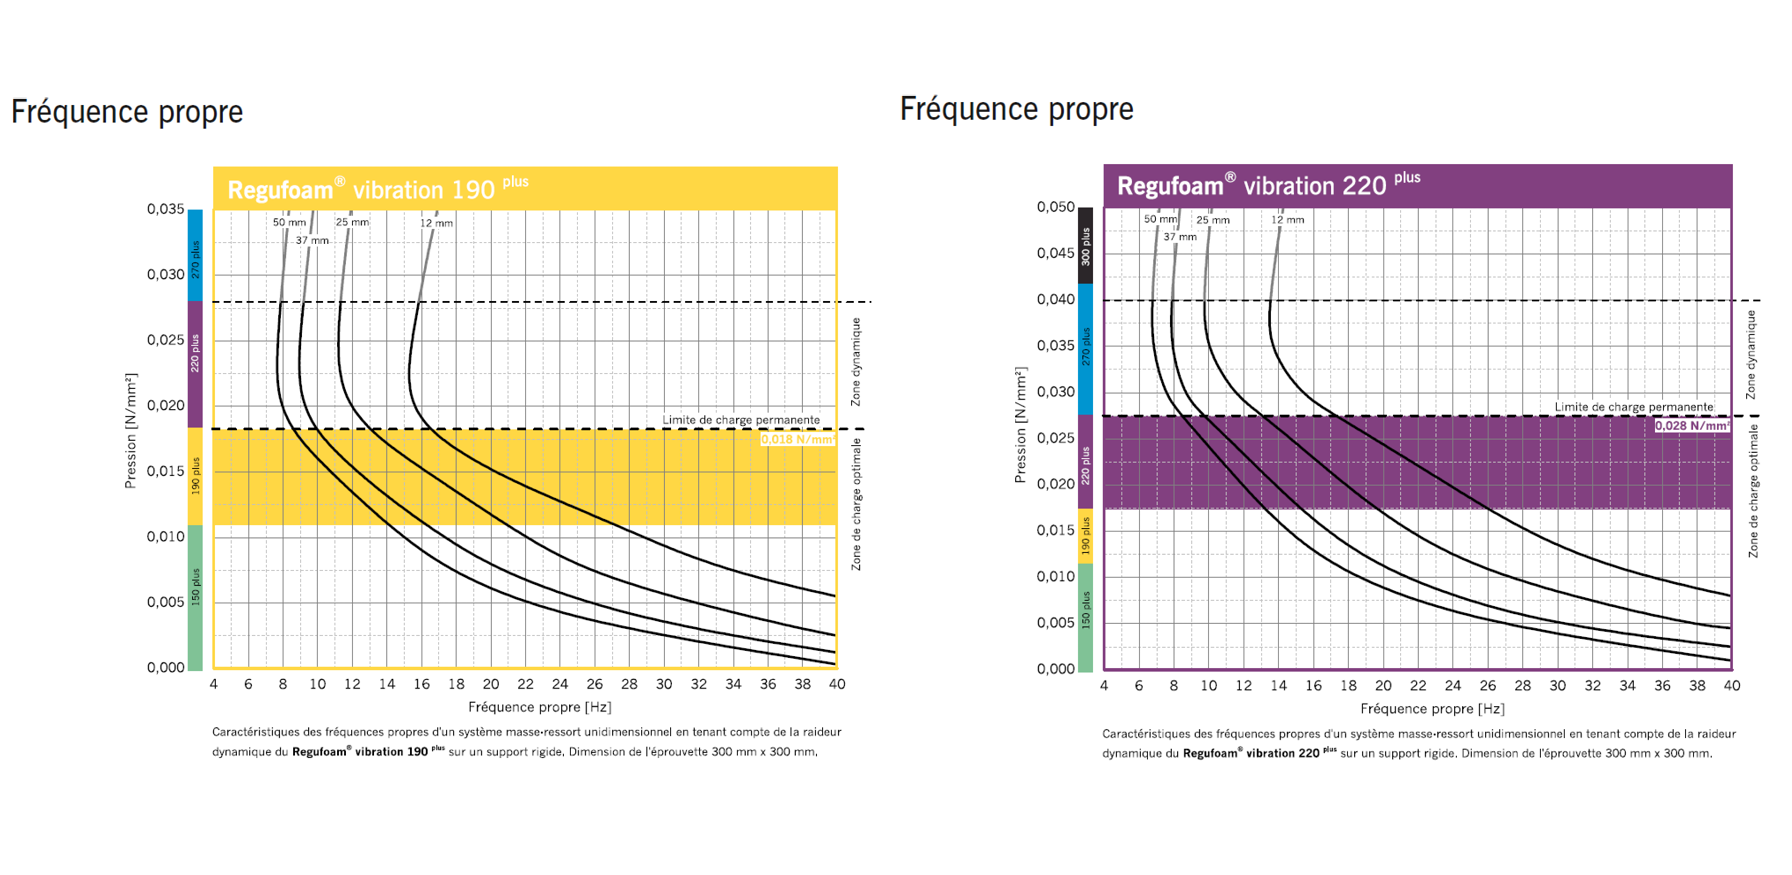 Graphique des fréquences propres du Regufoam vibration 220 et 190